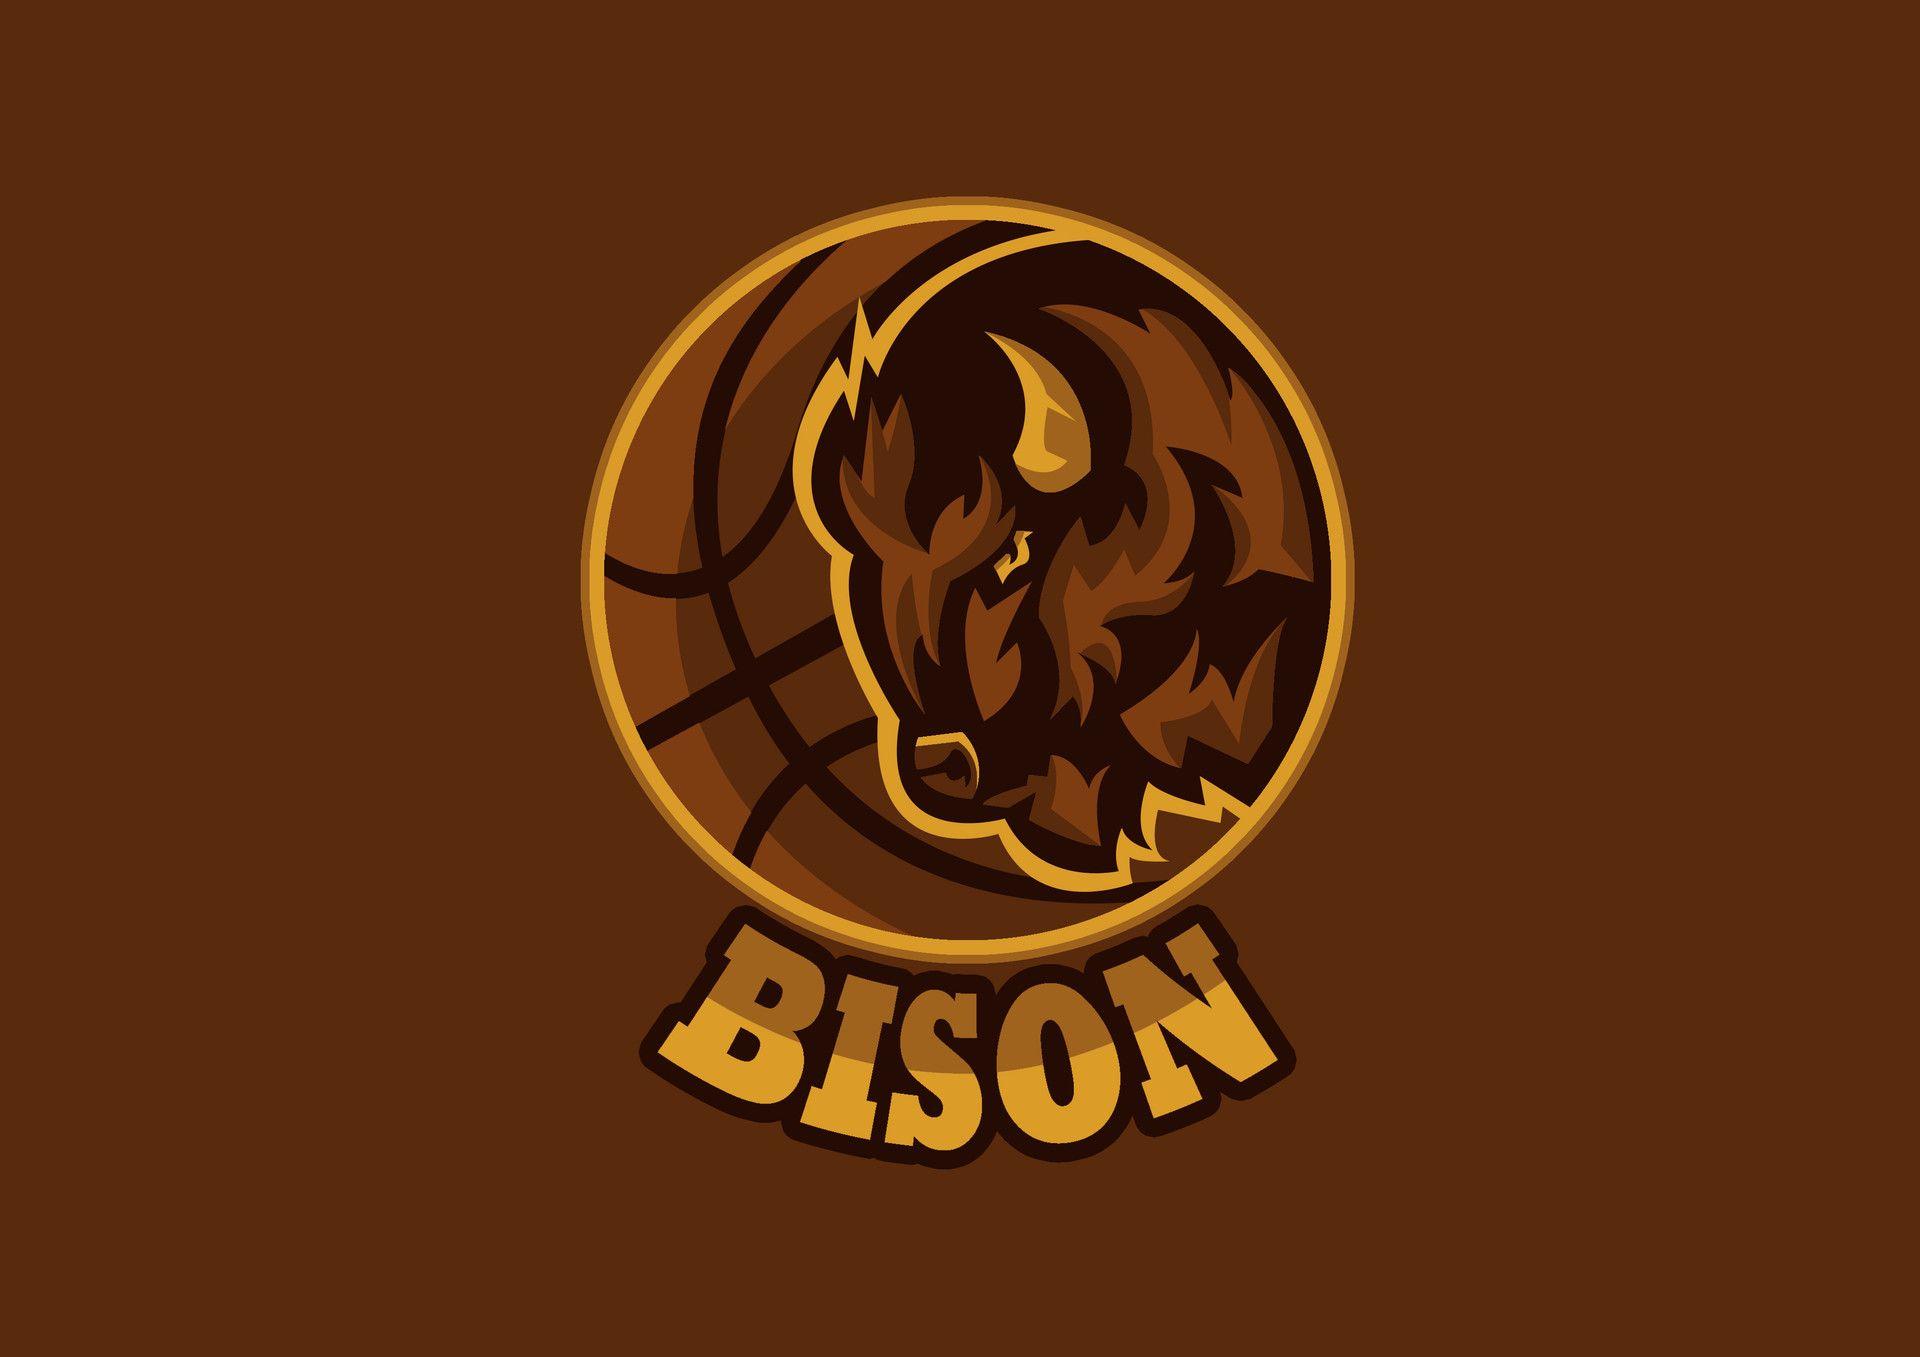 Bisons Basketball Logo - ArtStation - LOGO DESIGN, VEEJ ART